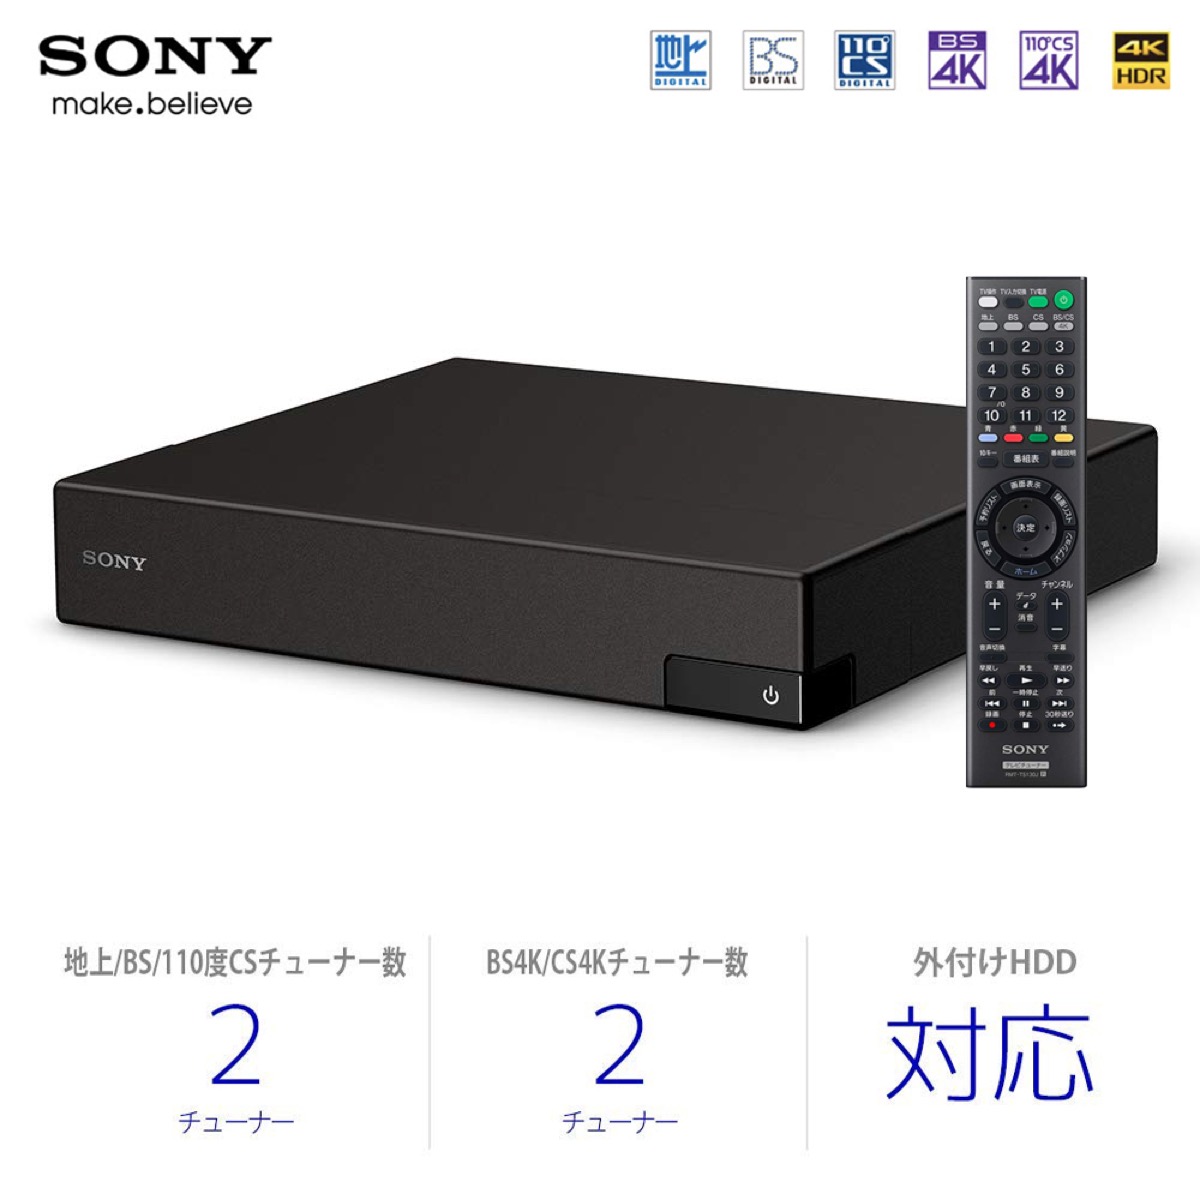 【楽天市場】SONY 4Kチューナー DST-SHV1 BS/CS4K 地上デジタル 裏録対応 ダブルチューナー HDMIケーブル付属 4K